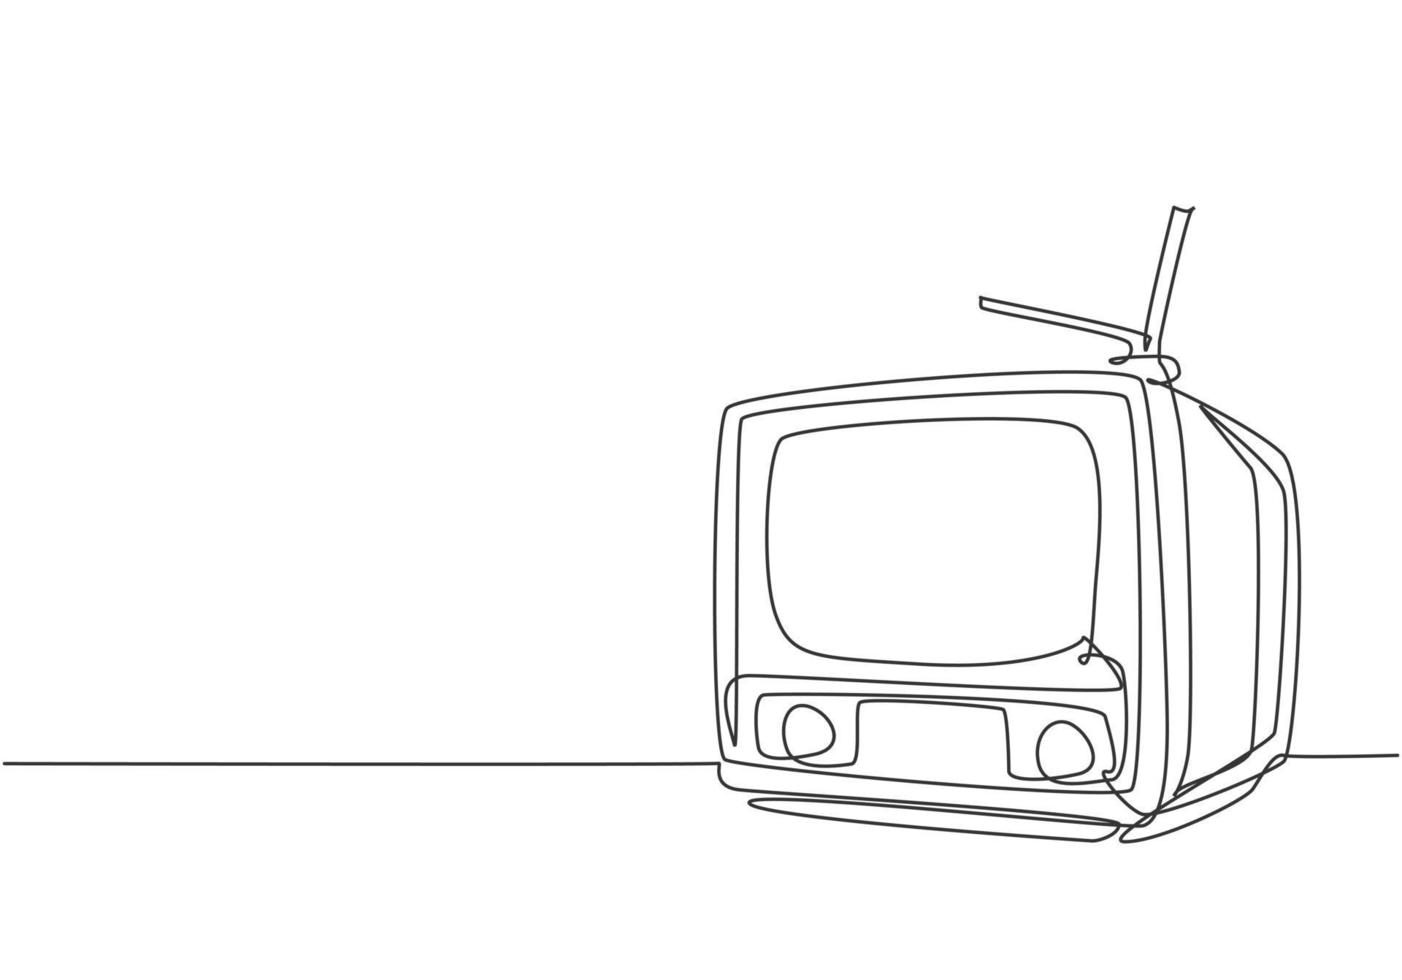 un dessin au trait continu de la vieille télévision classique rétro avec antenne. Élément de divertissement tv analogique vintage concept unique ligne dessiner illustration graphique vectorielle de conception vecteur